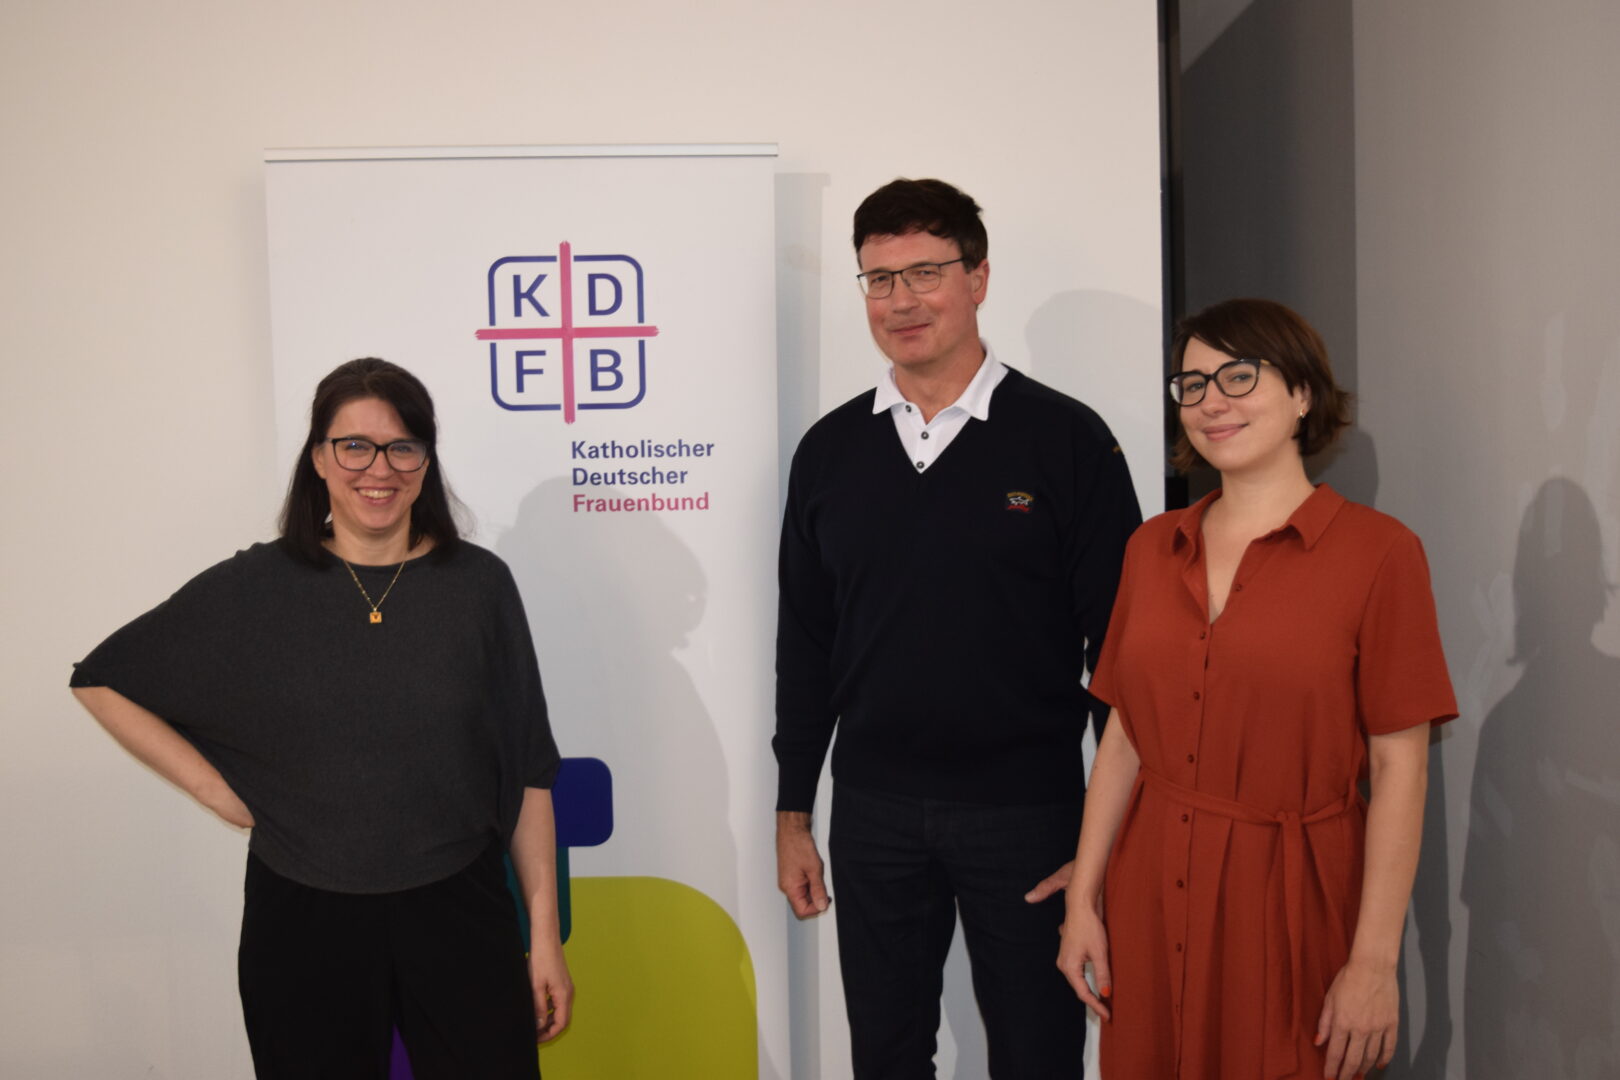 Vor dem Rollup des KDFB Berlin stehen von links KDFB-Referentin Heike Neubrand, Referent des Abends Prof. Dr. Imre Koncsik und die Geschäftsführerin der Guardini Stiftung, Dr. Patricia Löwe.